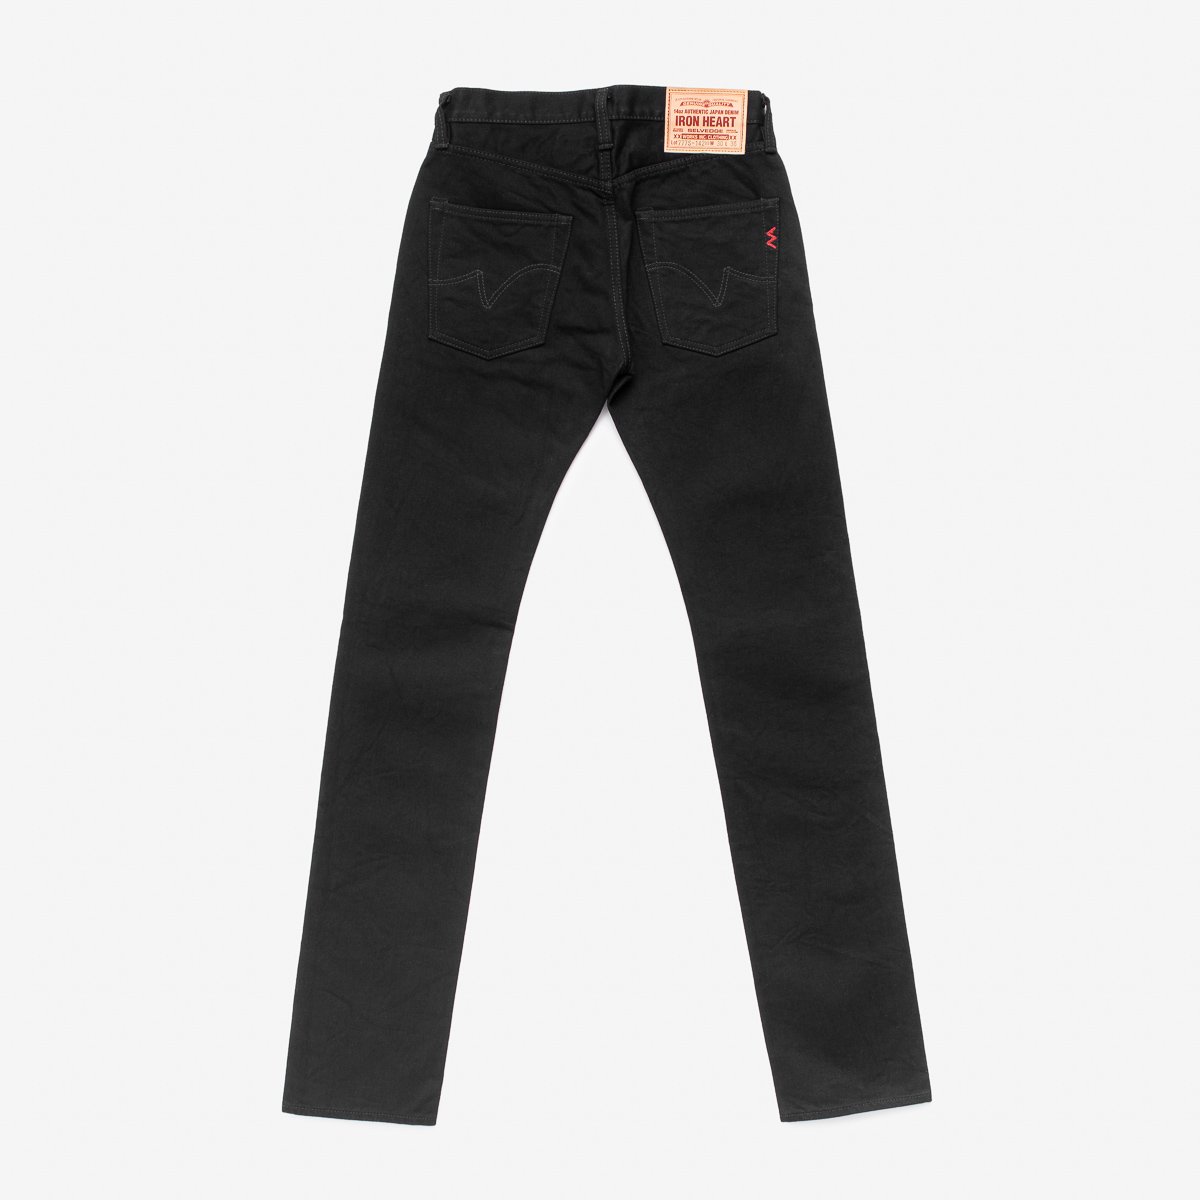 14oz Selvedge Denim Tapered Jeans - Black/Black